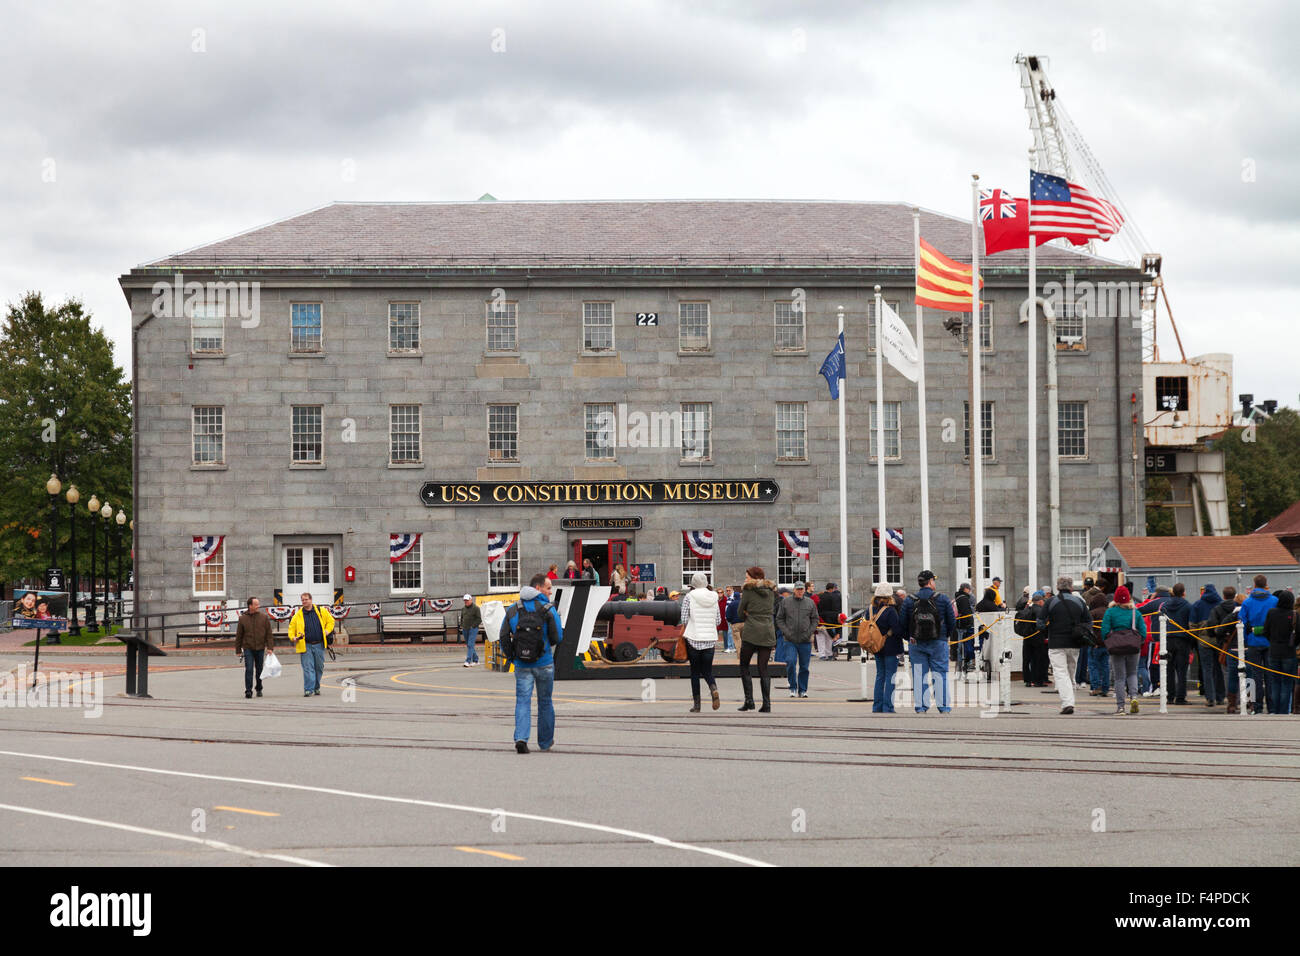 Le USS Constitution Museum building, sur le Freedom Trail, Boston, Massachusetts, USA Banque D'Images